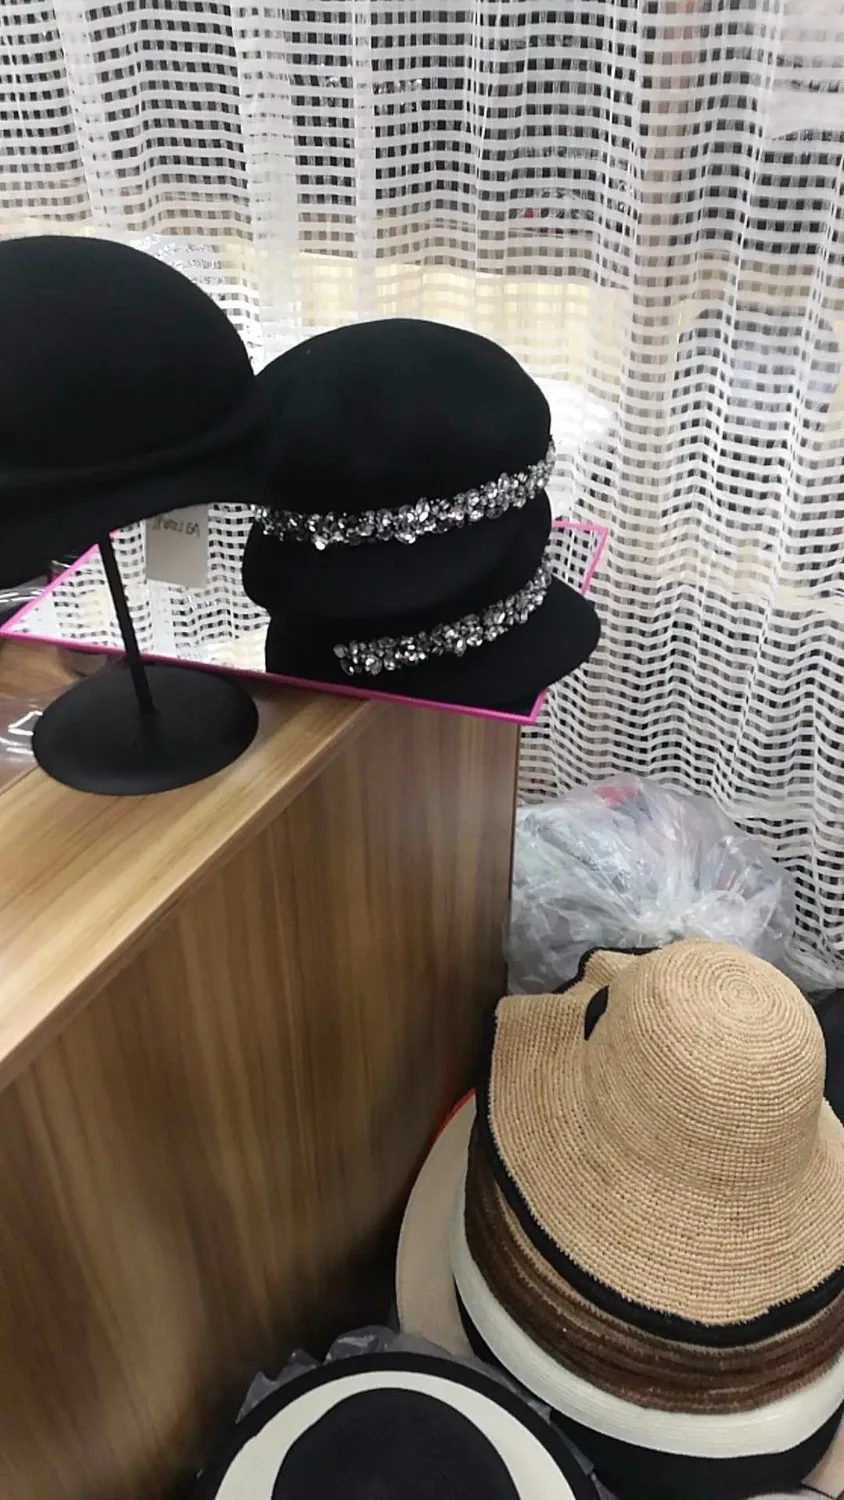 Axi01808 зима% шерсть хорошее качество сплошной Блестящий Алмаз теплый Досуг Леди береты кепки женские шерстяные Козырьки Шляпы